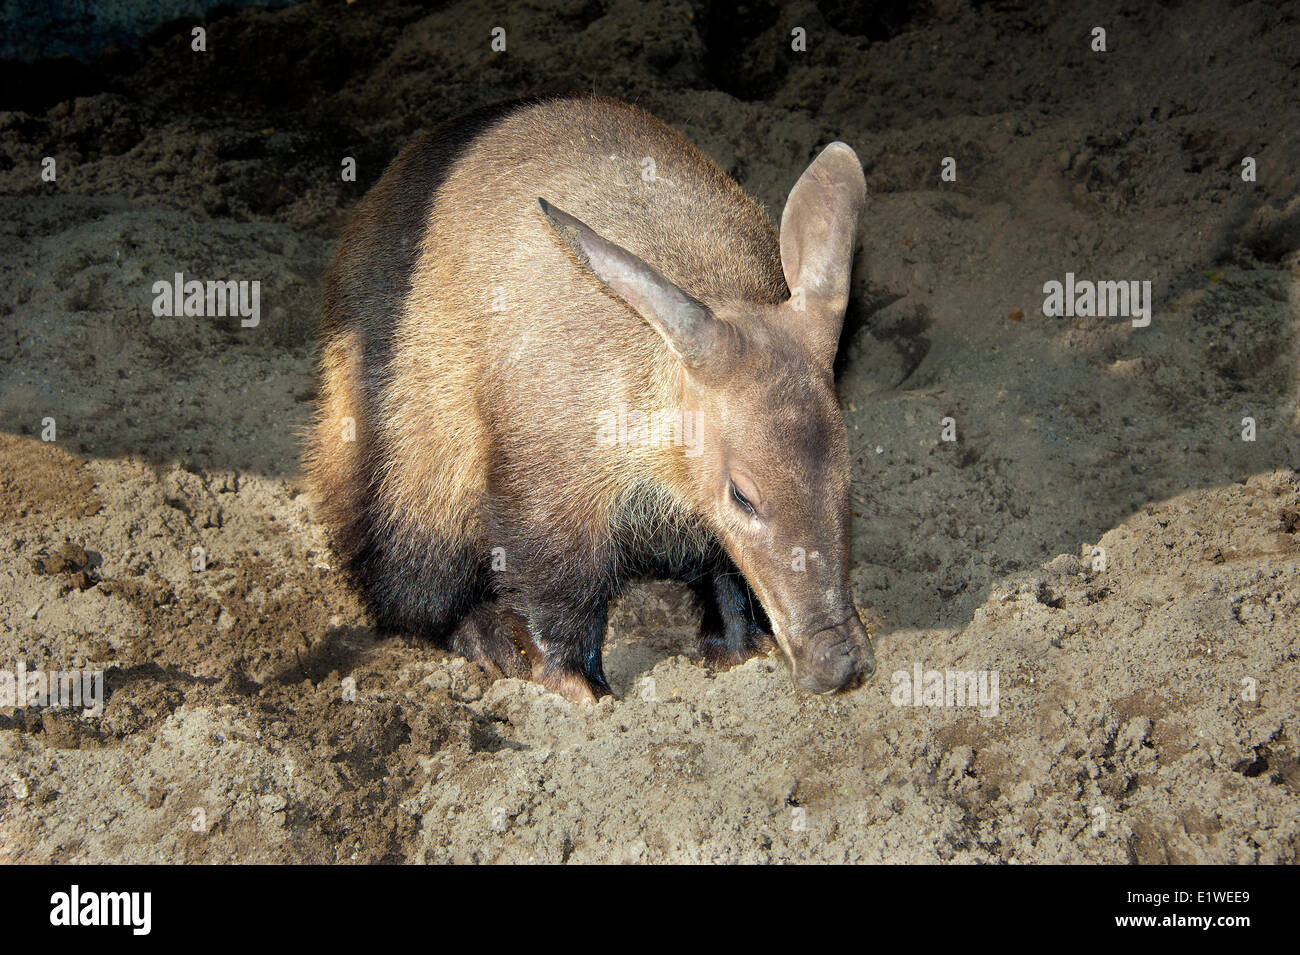 Aardvark adultes (Orycteropus afer), de nourriture, de l'Afrique de l'Est. Banque D'Images